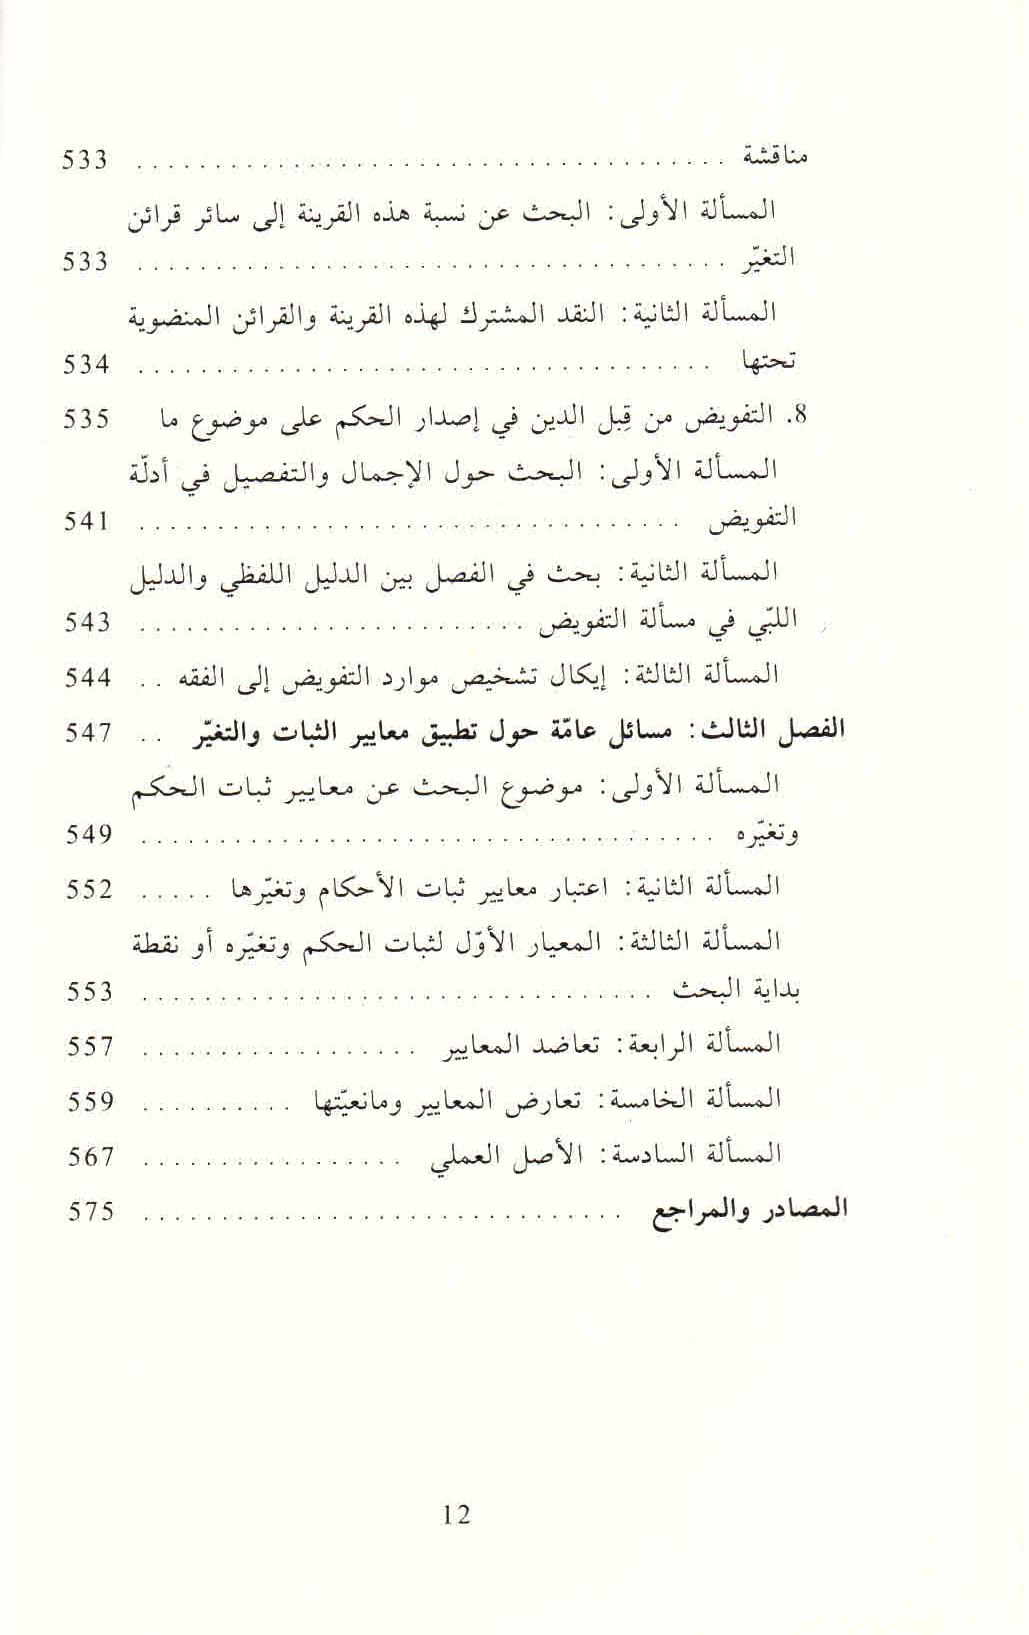 ص. 12 قائمة محتويات كتاب الثابت والمتغير في الأدلة النصية